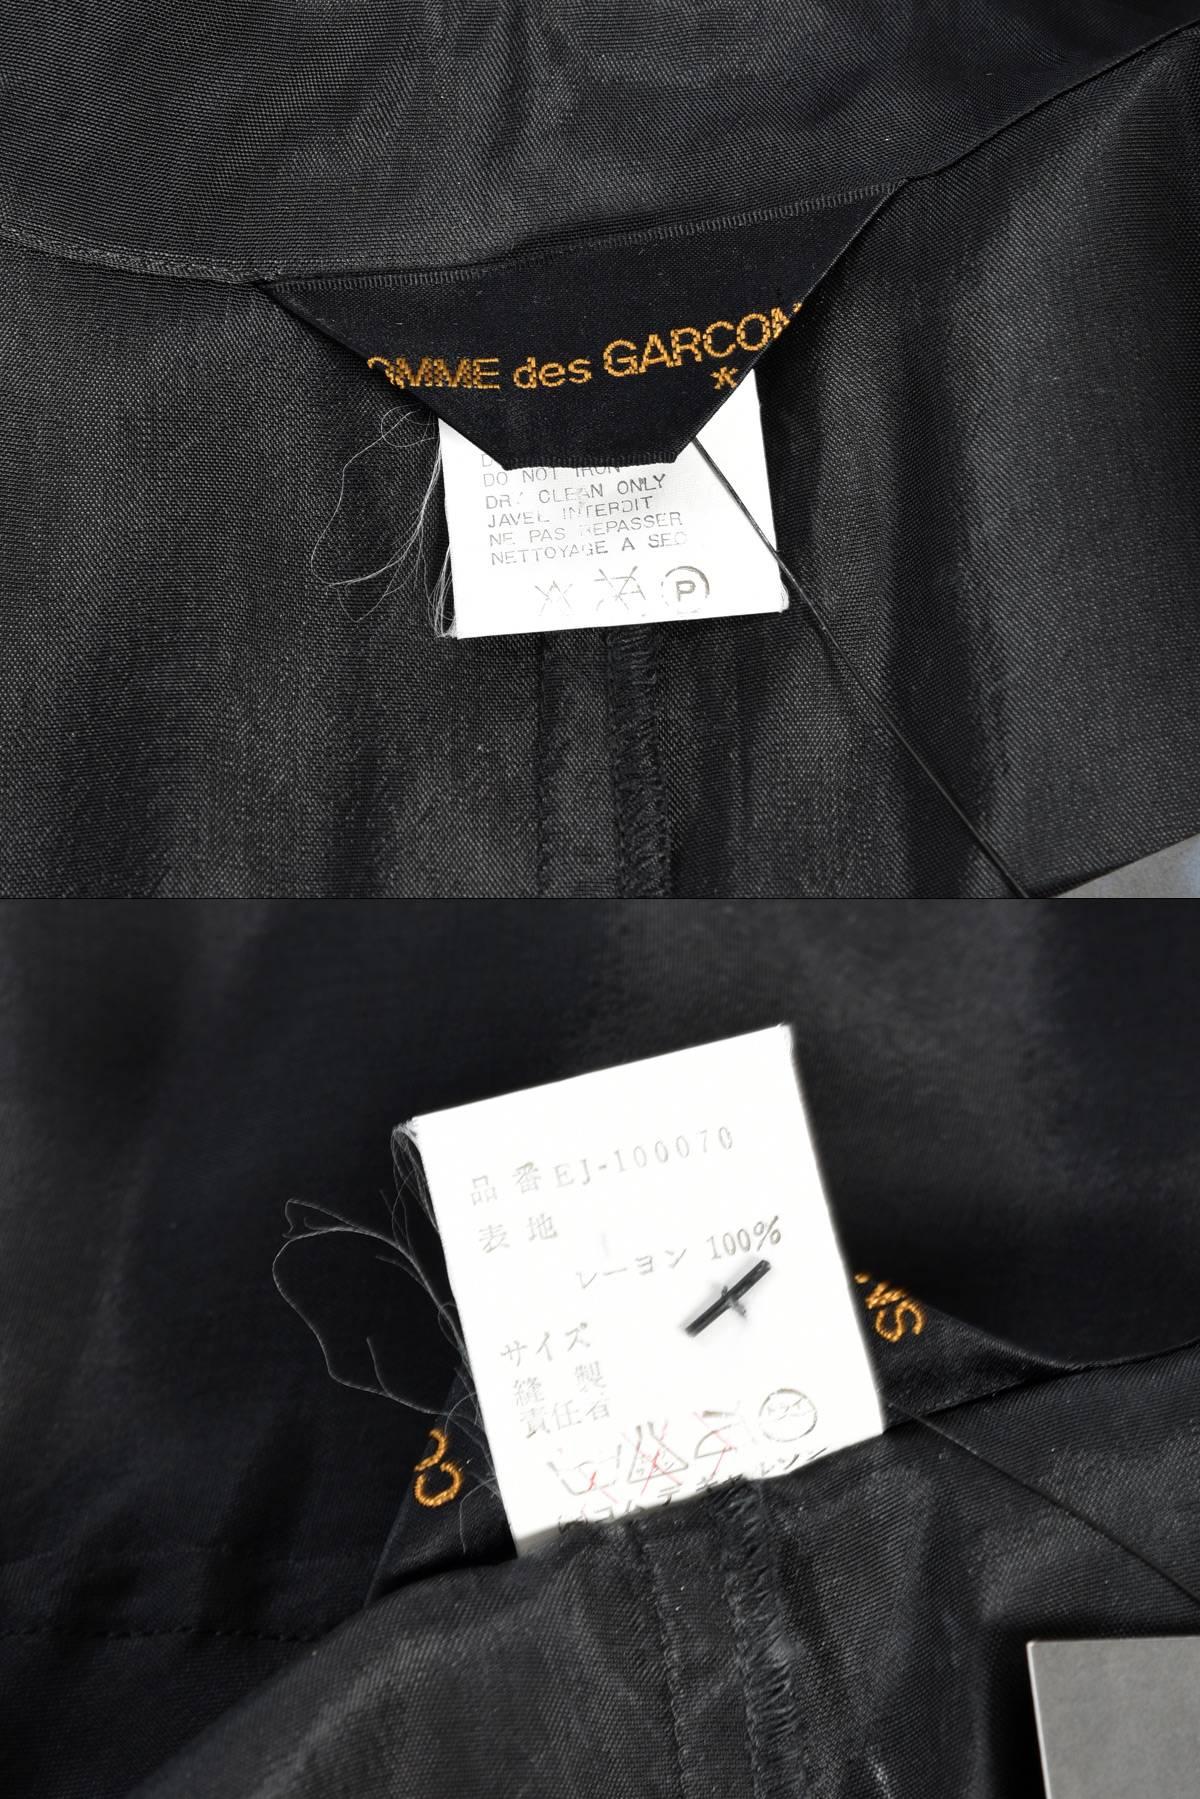 Comme des Garcons Asymmetrical Minimal Black Dress For Sale 6